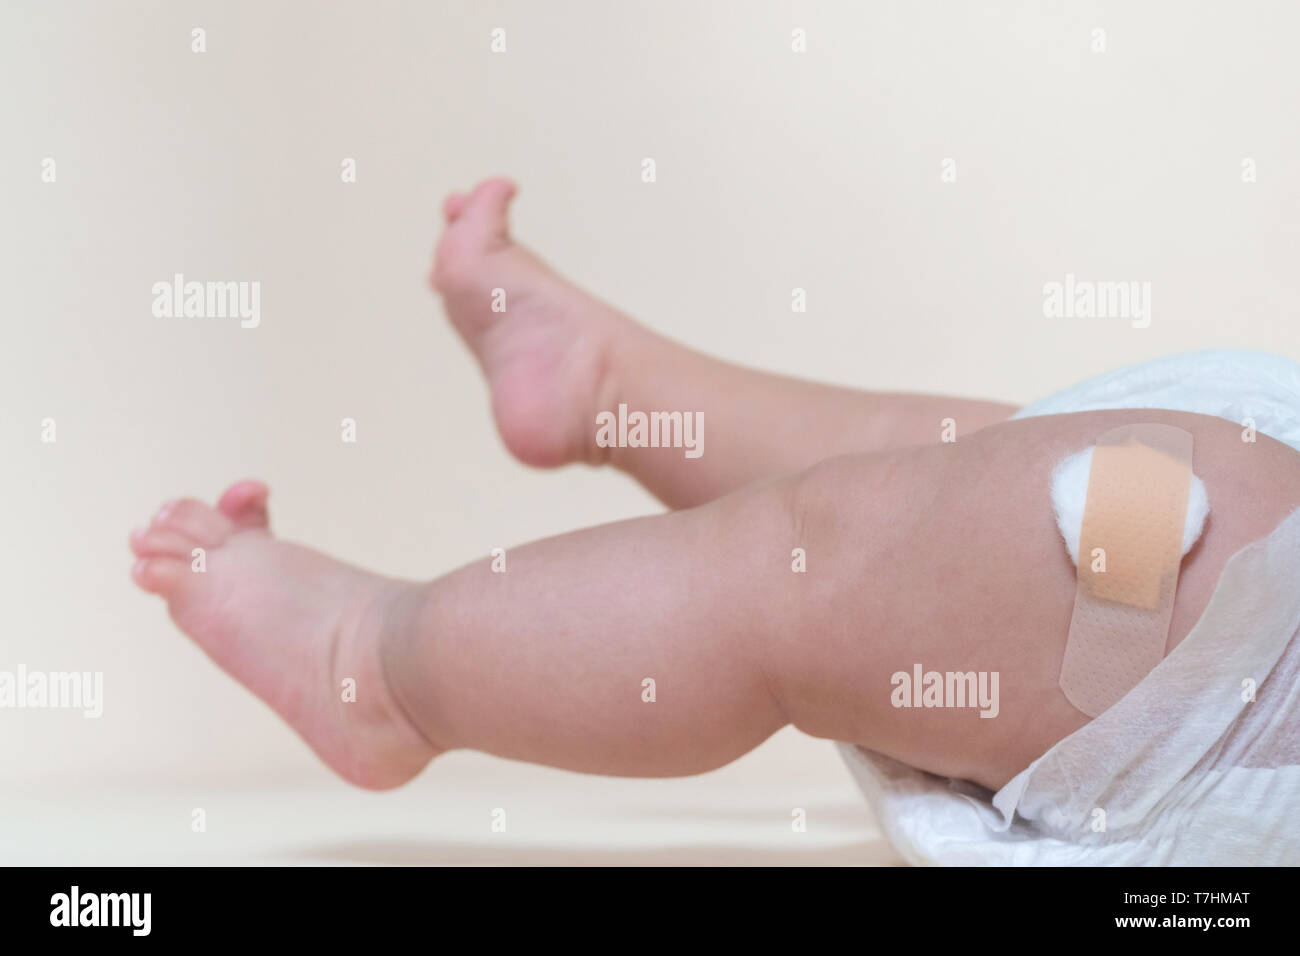 Baby Junge Beine mit einem band-aid Patch nach der Einnahme ein Impfstoff. Arzt oder Krankenschwester, Pflaster auf Baby Bein im Krankenhaus. Stockfoto